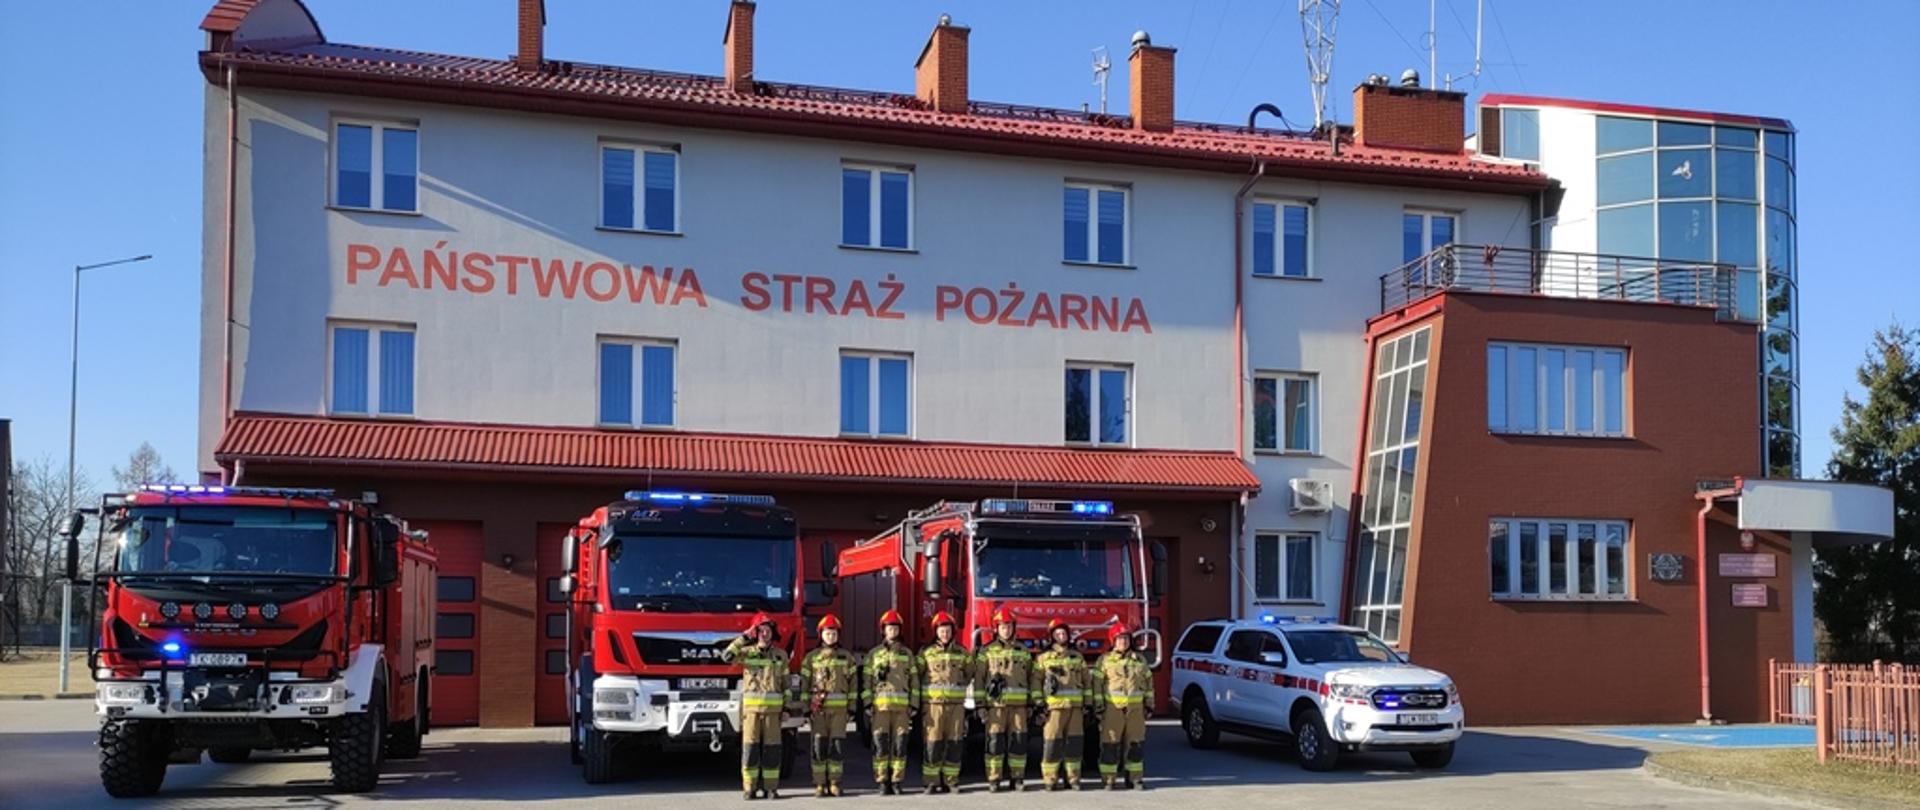 Zmiana służby w JRG Włoszczowa, zmiany służbowe ustawione w szeregu przed pojazdami pożarniczymi przed budynkiem Komendy Powiatowej Państwowej Straży Pożarnej we Włoszczowie